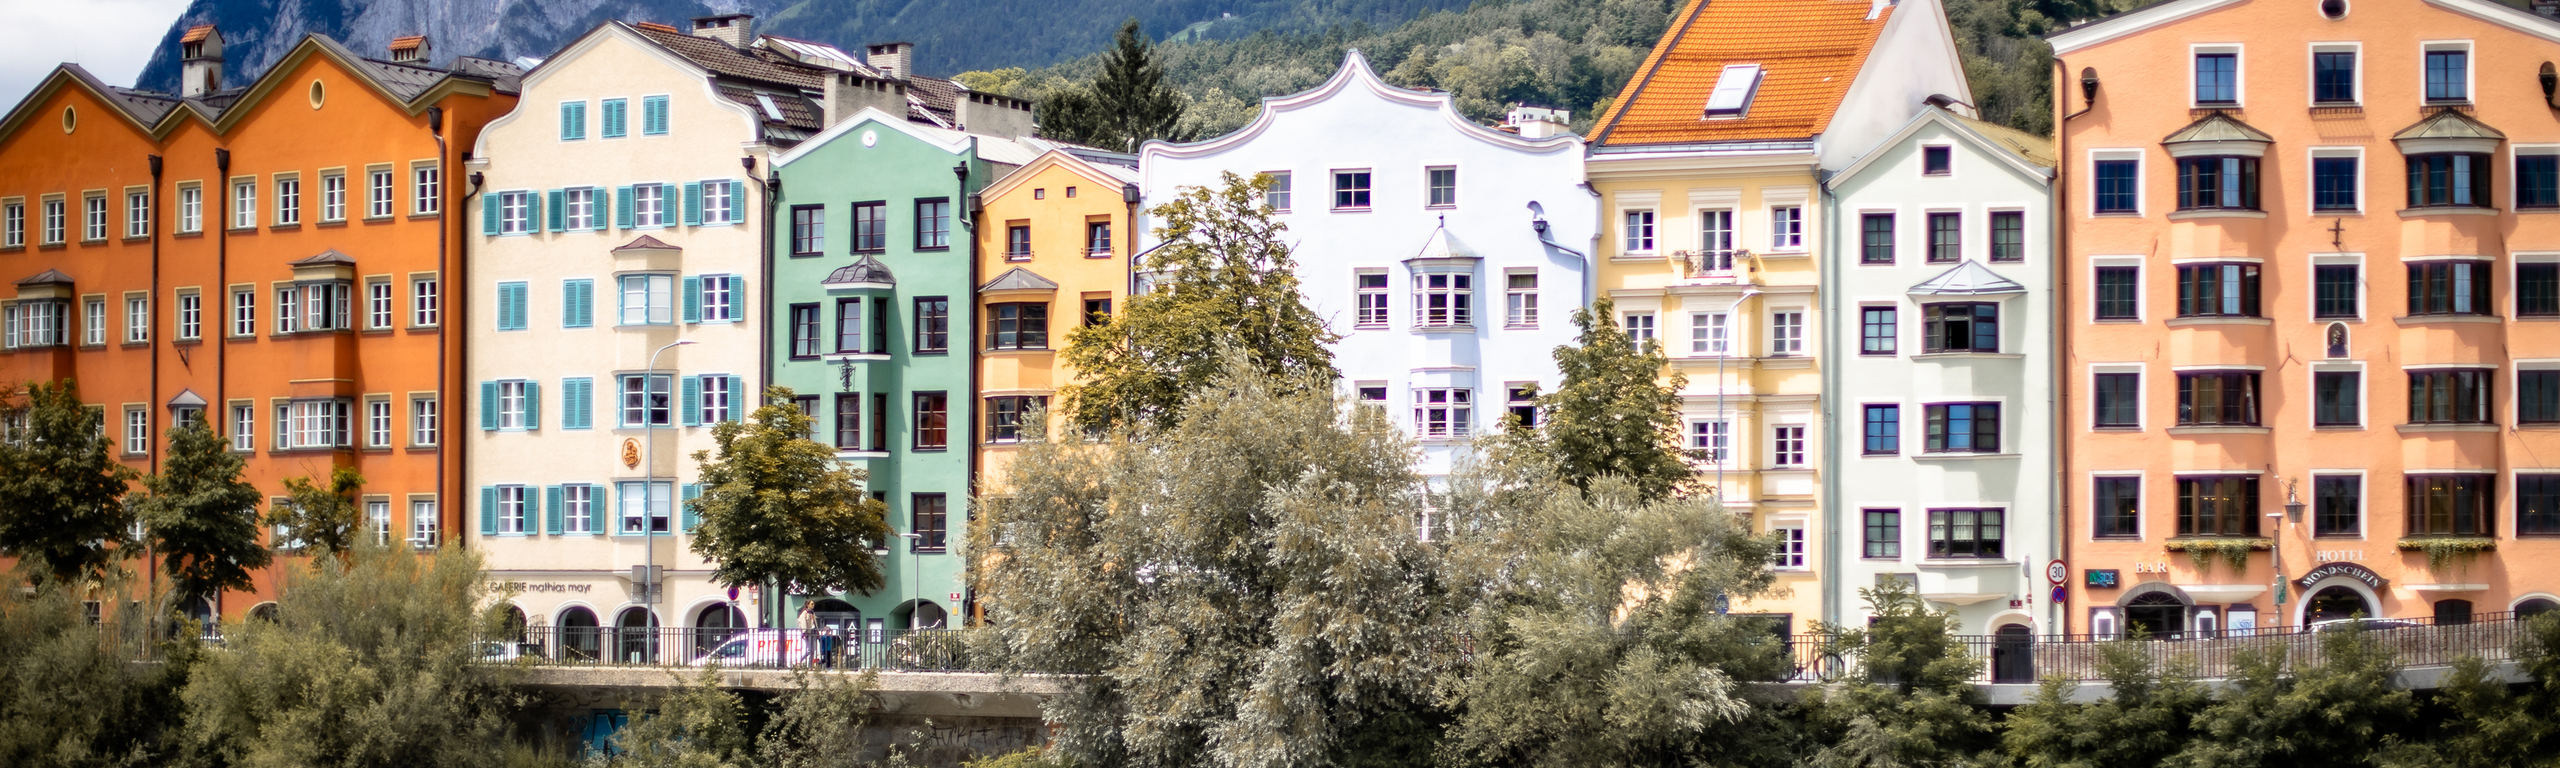 Des maisons colorées derrière une rivière.